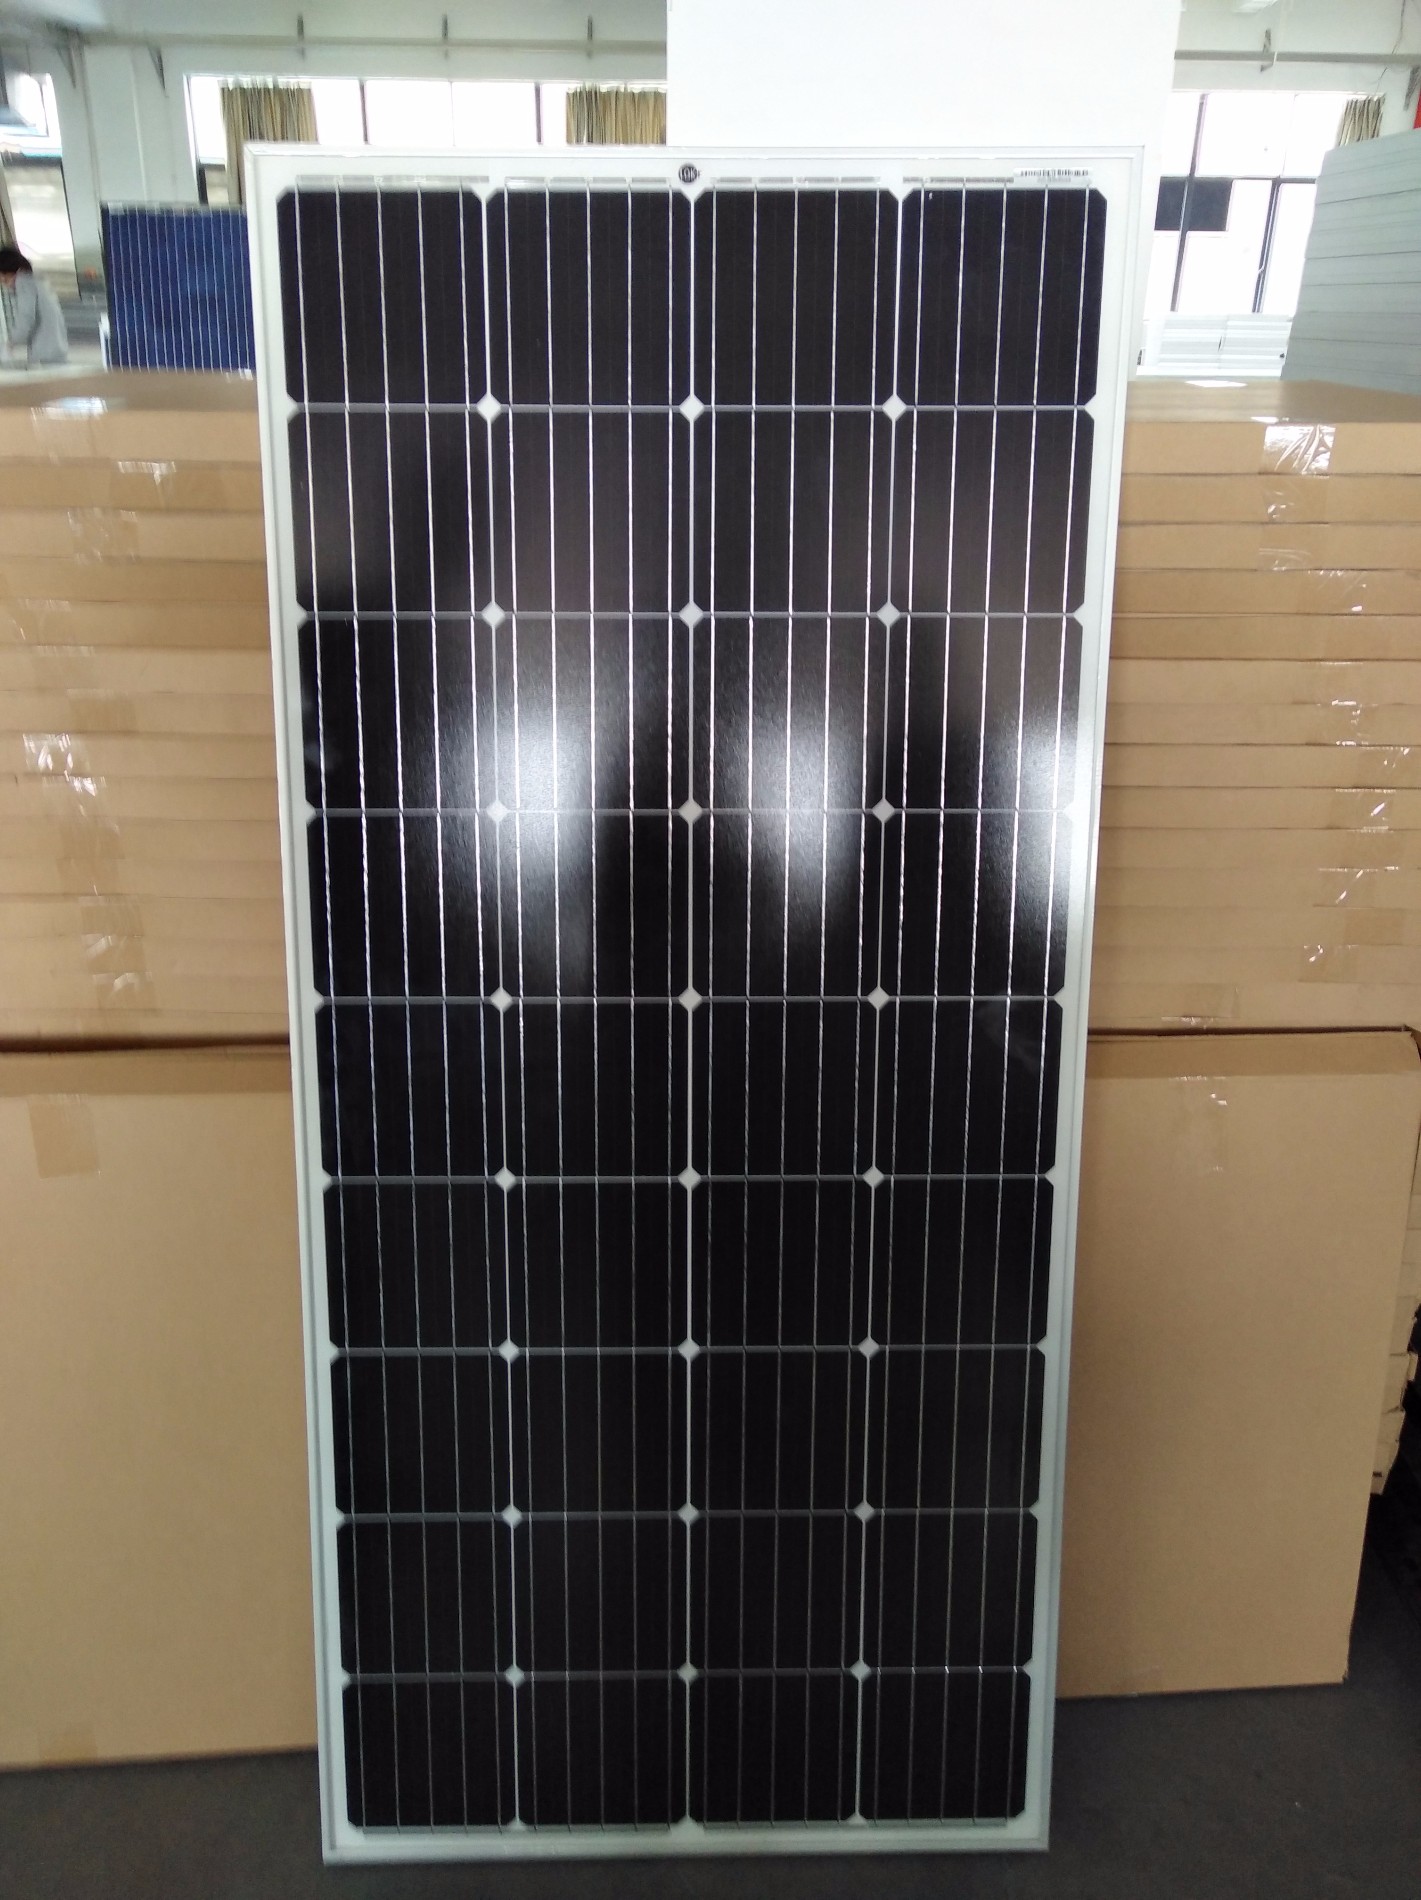 Satış Tek Solar Fotovoltaik Panel 150W, Güneş pilleri ve panelleri satın alın